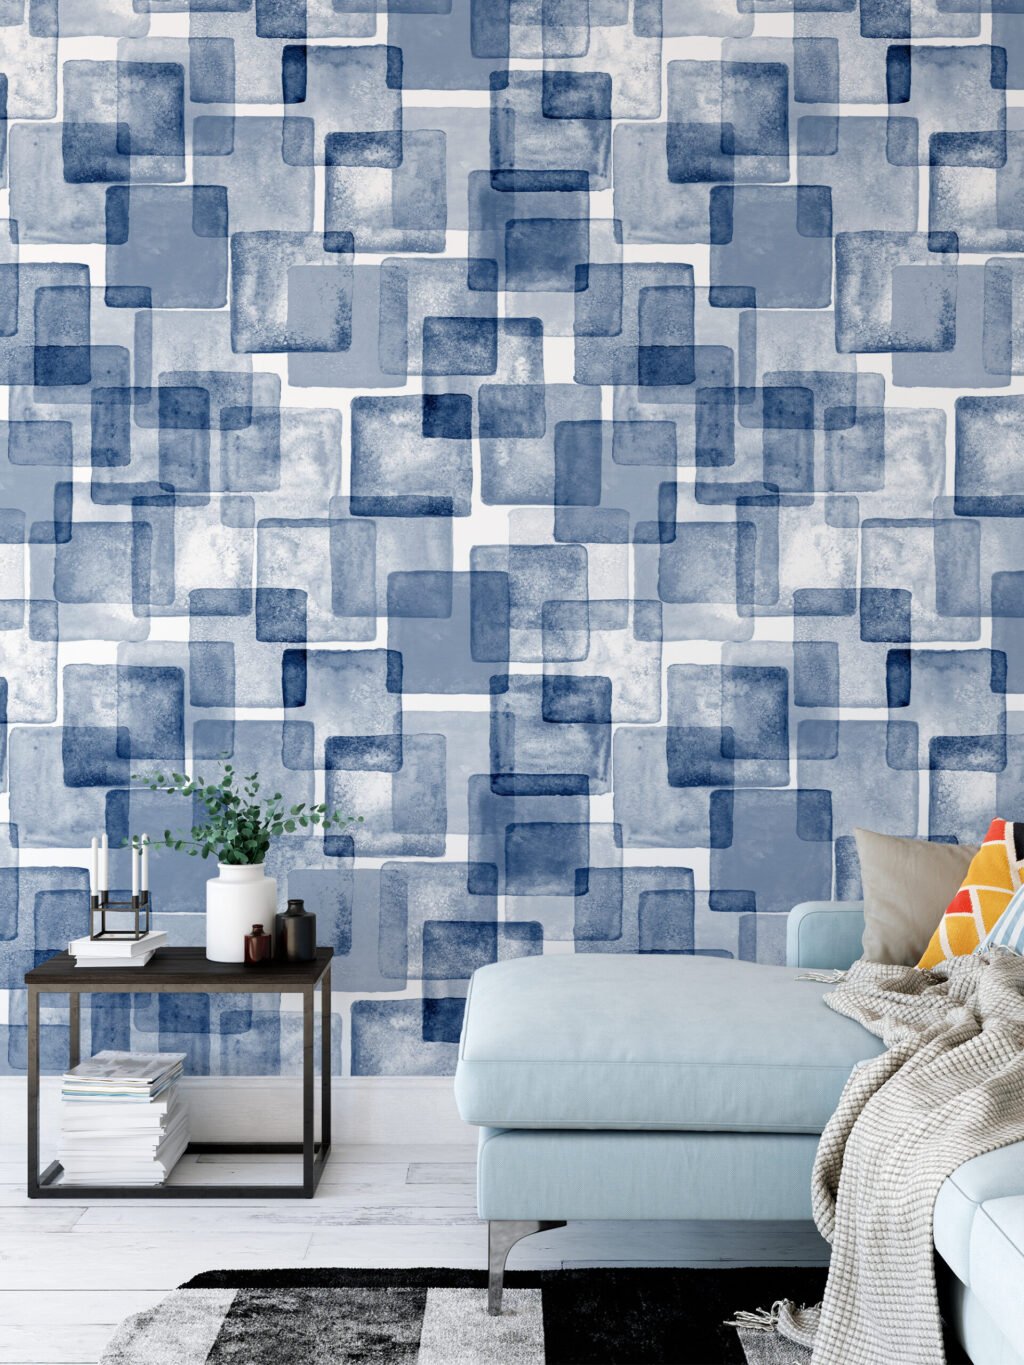 Sulu Boya Tarzı Mavi Kareler Geometrik Duvar Kağıdı, Sanatsal Kübist 3D Duvar Posteri Geometrik Duvar Kağıtları 2